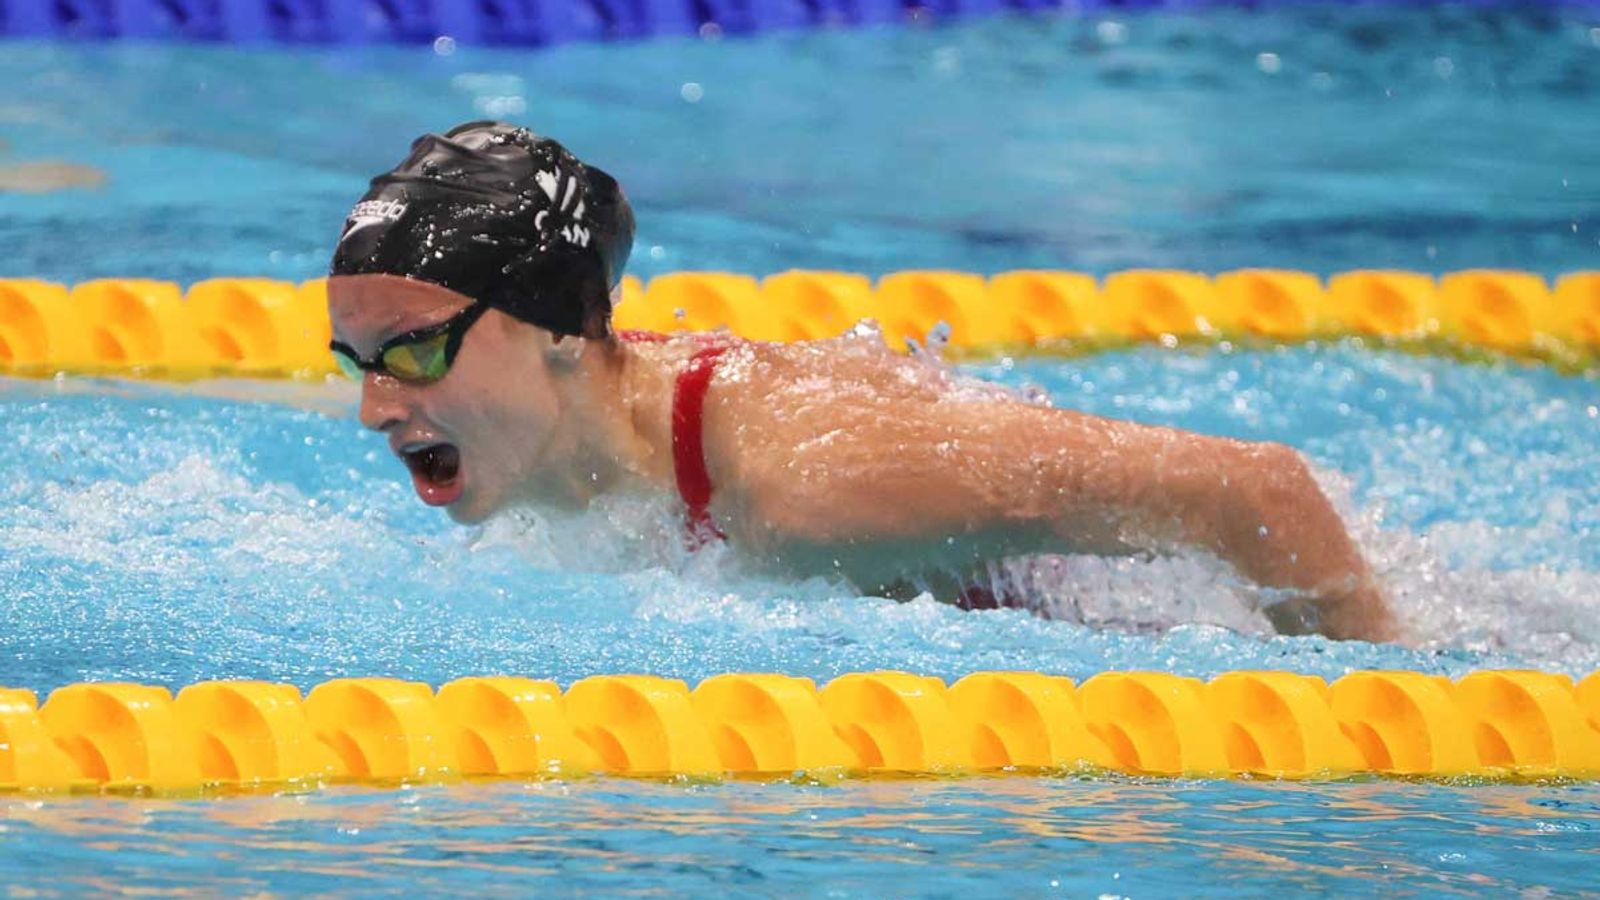 Schwimm-WM 15-jährige Summer McIntosh holt Gold inklusive Junioren-Weltrekord Schwimmen News Sky Sport